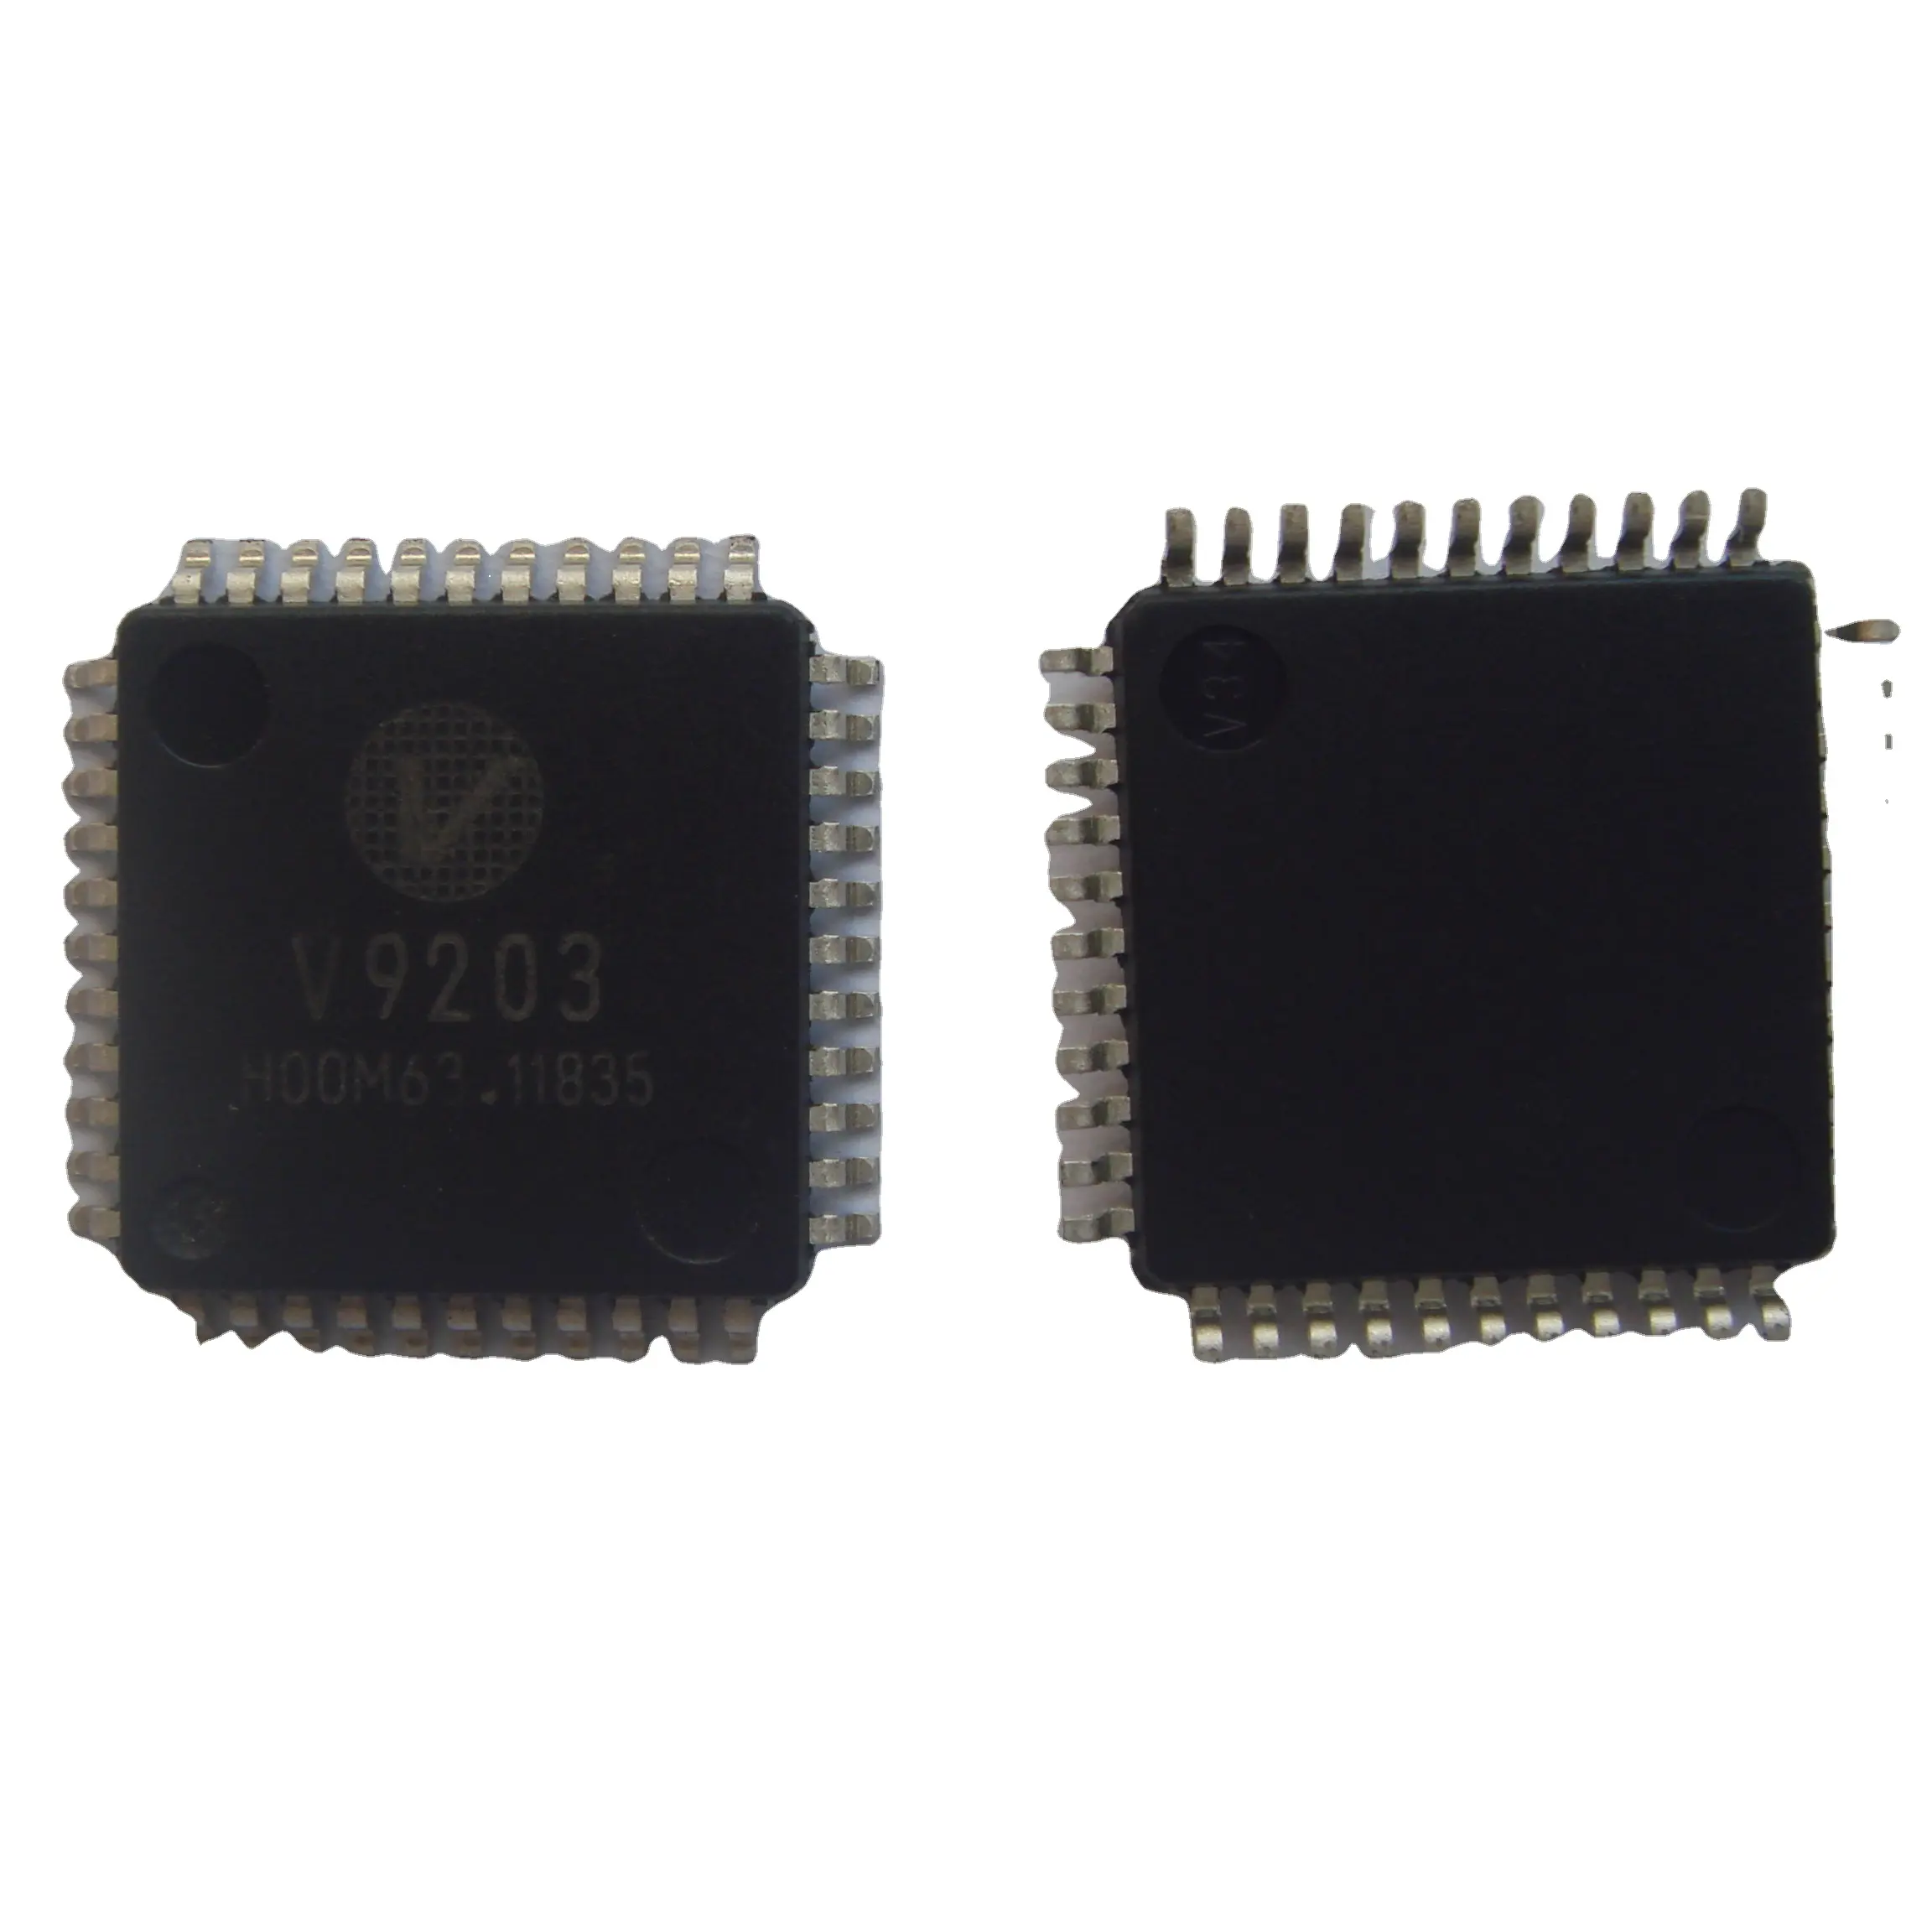 V9203 VANGO новые и Орг QFP44 интегральные схемы микроконтроллера IC MCU